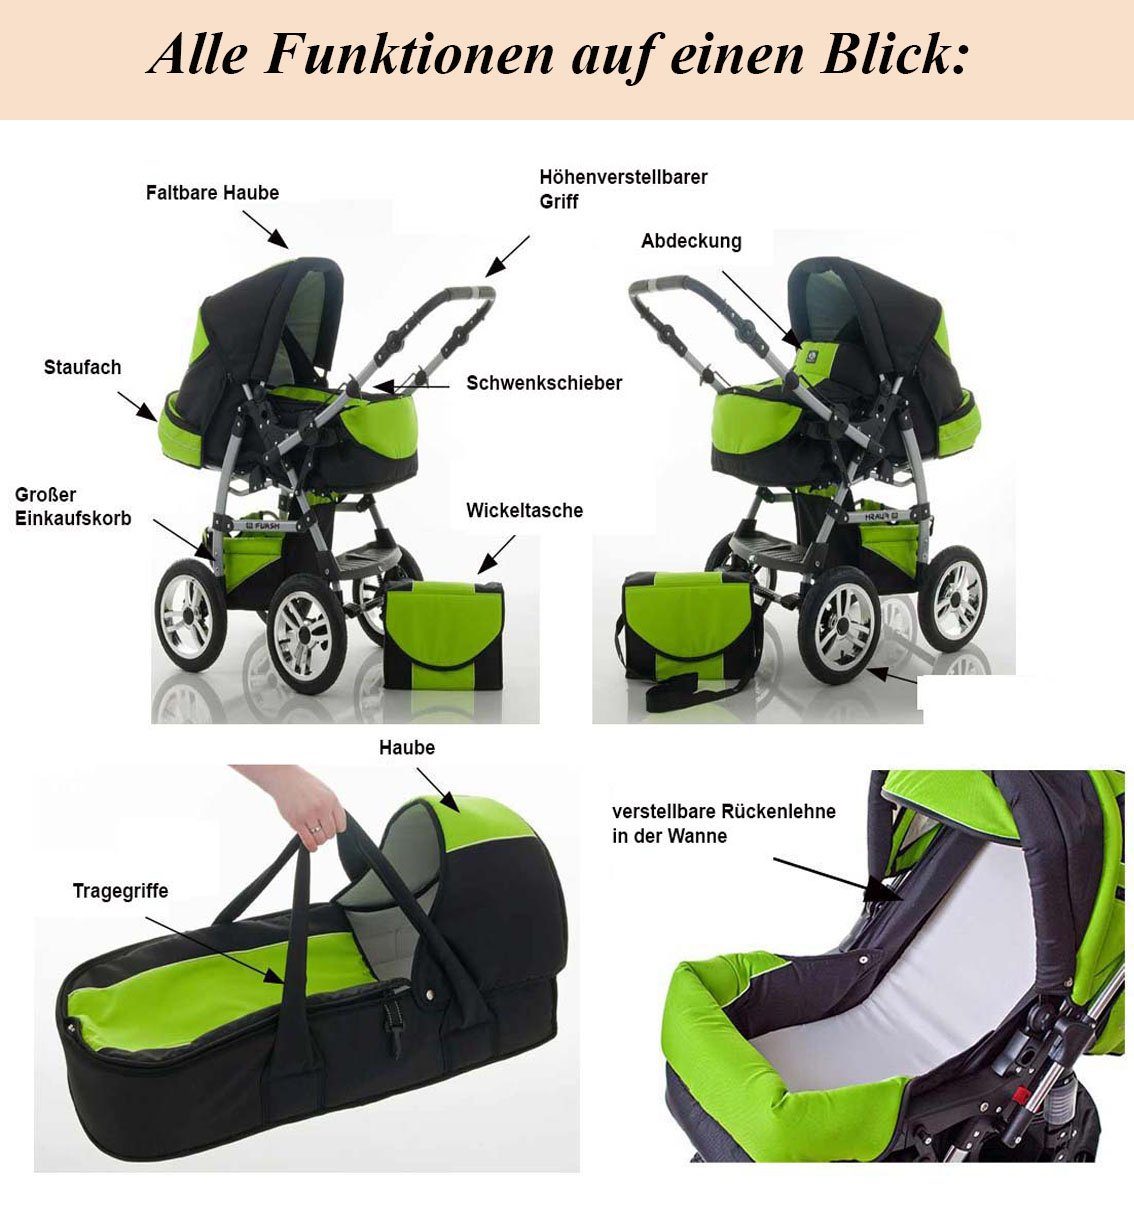 babies-on-wheels Kombi-Kinderwagen 2 Flash - 14 Kinderwagen-Set in 1 in Farben 18 - Teile Schwarz-Rot